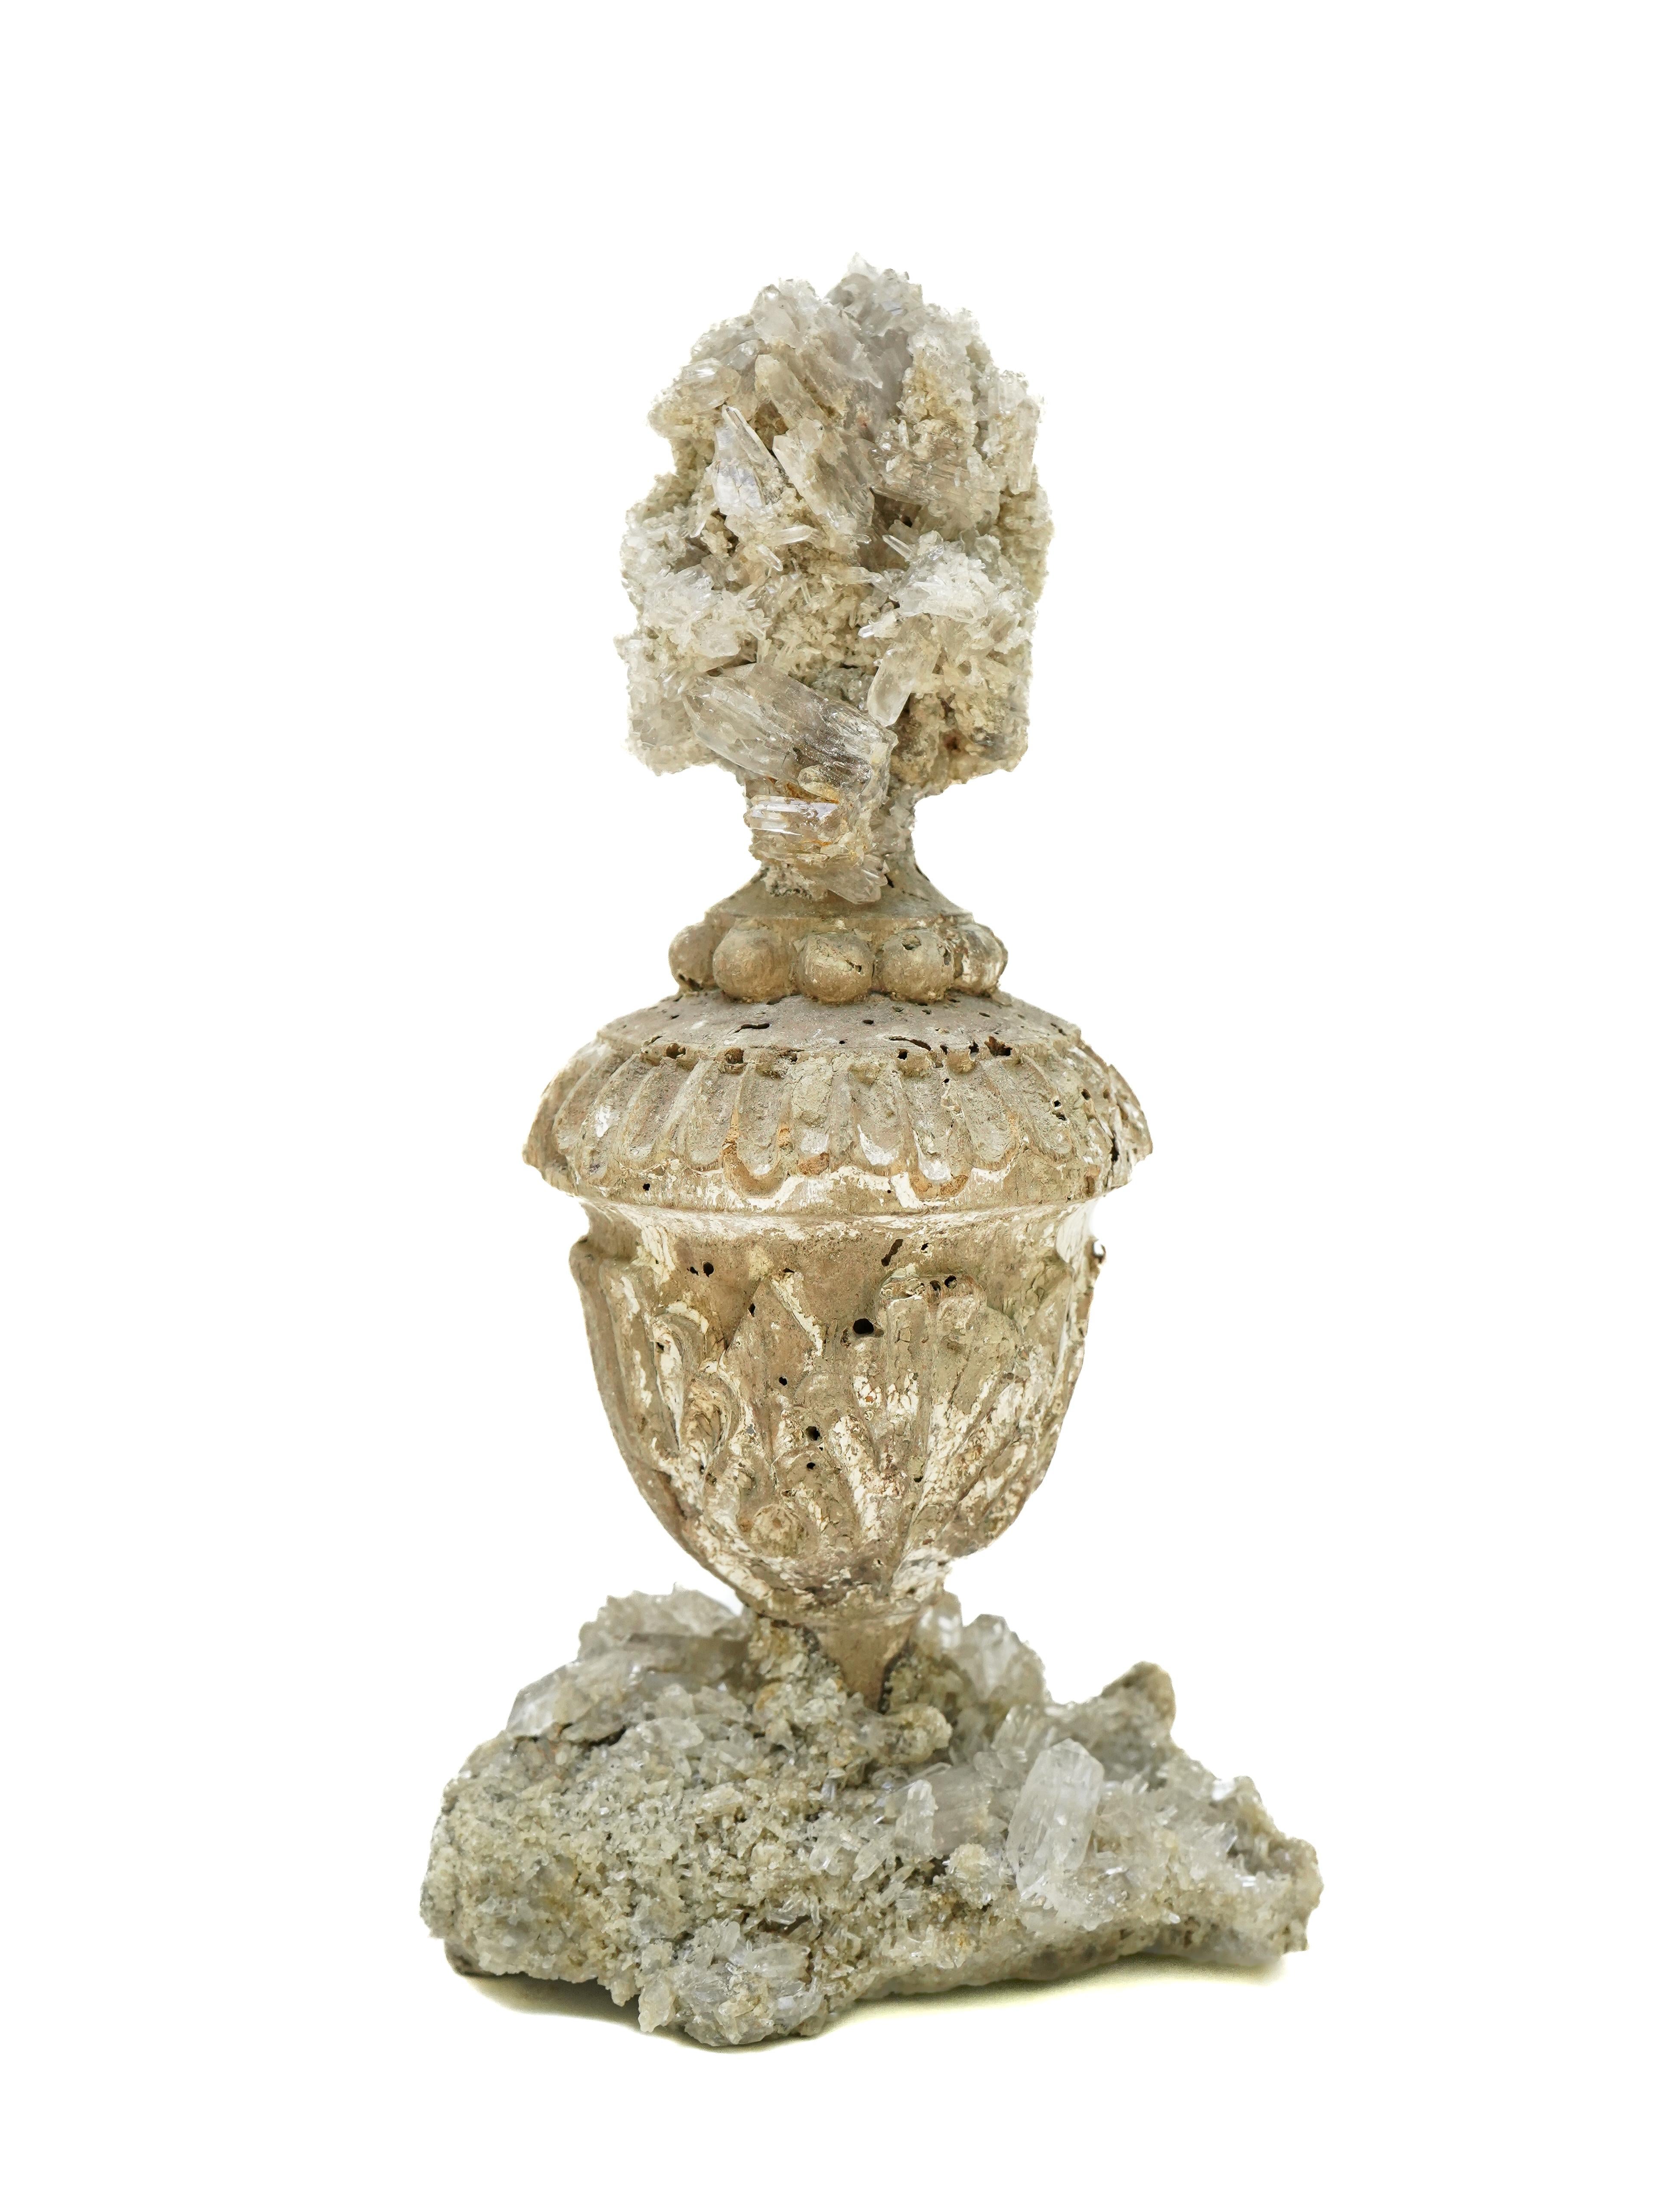 italienische Vase aus dem 17. Jahrhundert mit einem Kristallquarz-Cluster auf einem Sockel mit Kristallquarz-Cluster.

Dieses Fragment stammt aus einer Kirche in Florenz. Es wurde bei der historischen Überschwemmung von Florenz im Jahr 1966